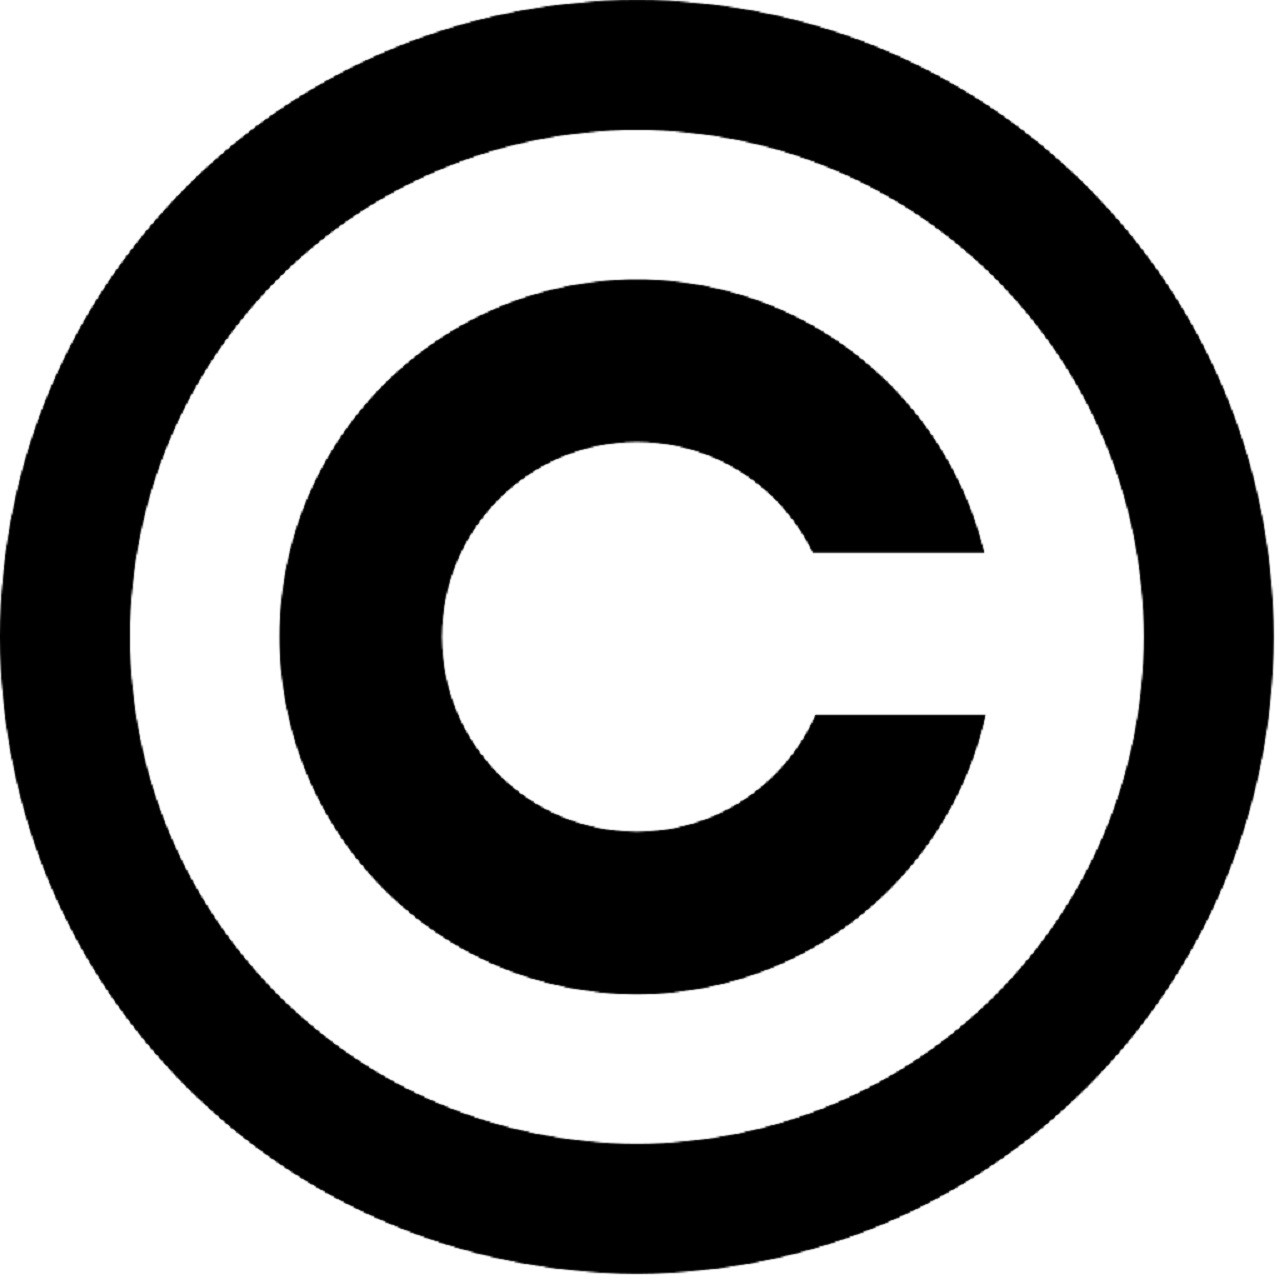 Simbol copyrighta - crno slovo C na bijeloj podlozi i u crnom krugu - označava da je neko djelo zaštićeno autorskim pravima.